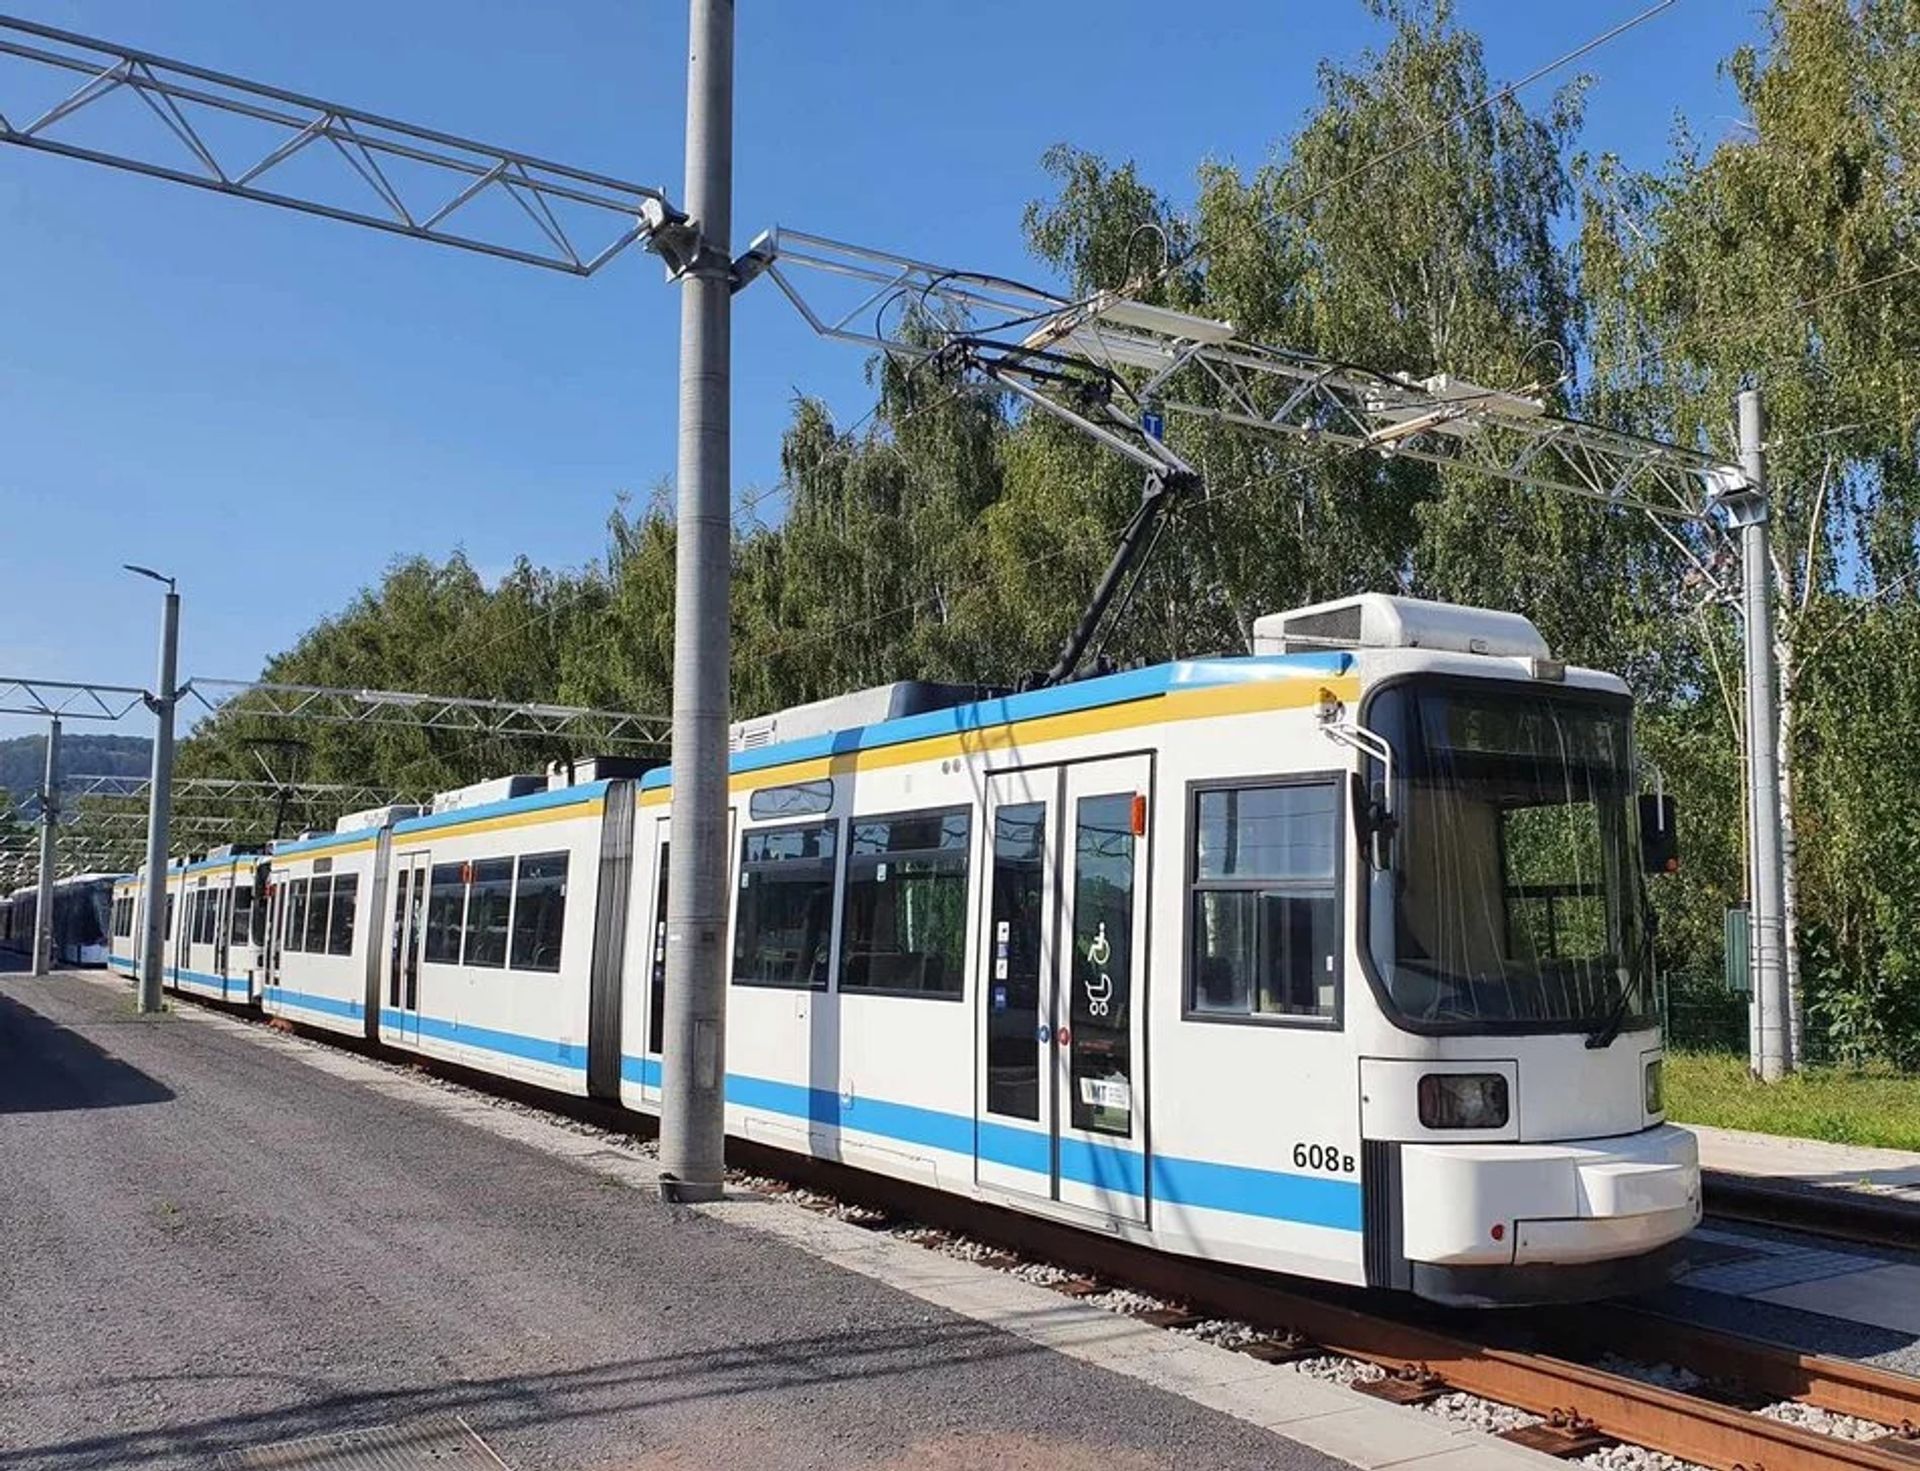 Nowe tramwaje w taborze MPK Łódź. Dotrą prosto z niemieckiej Jeny